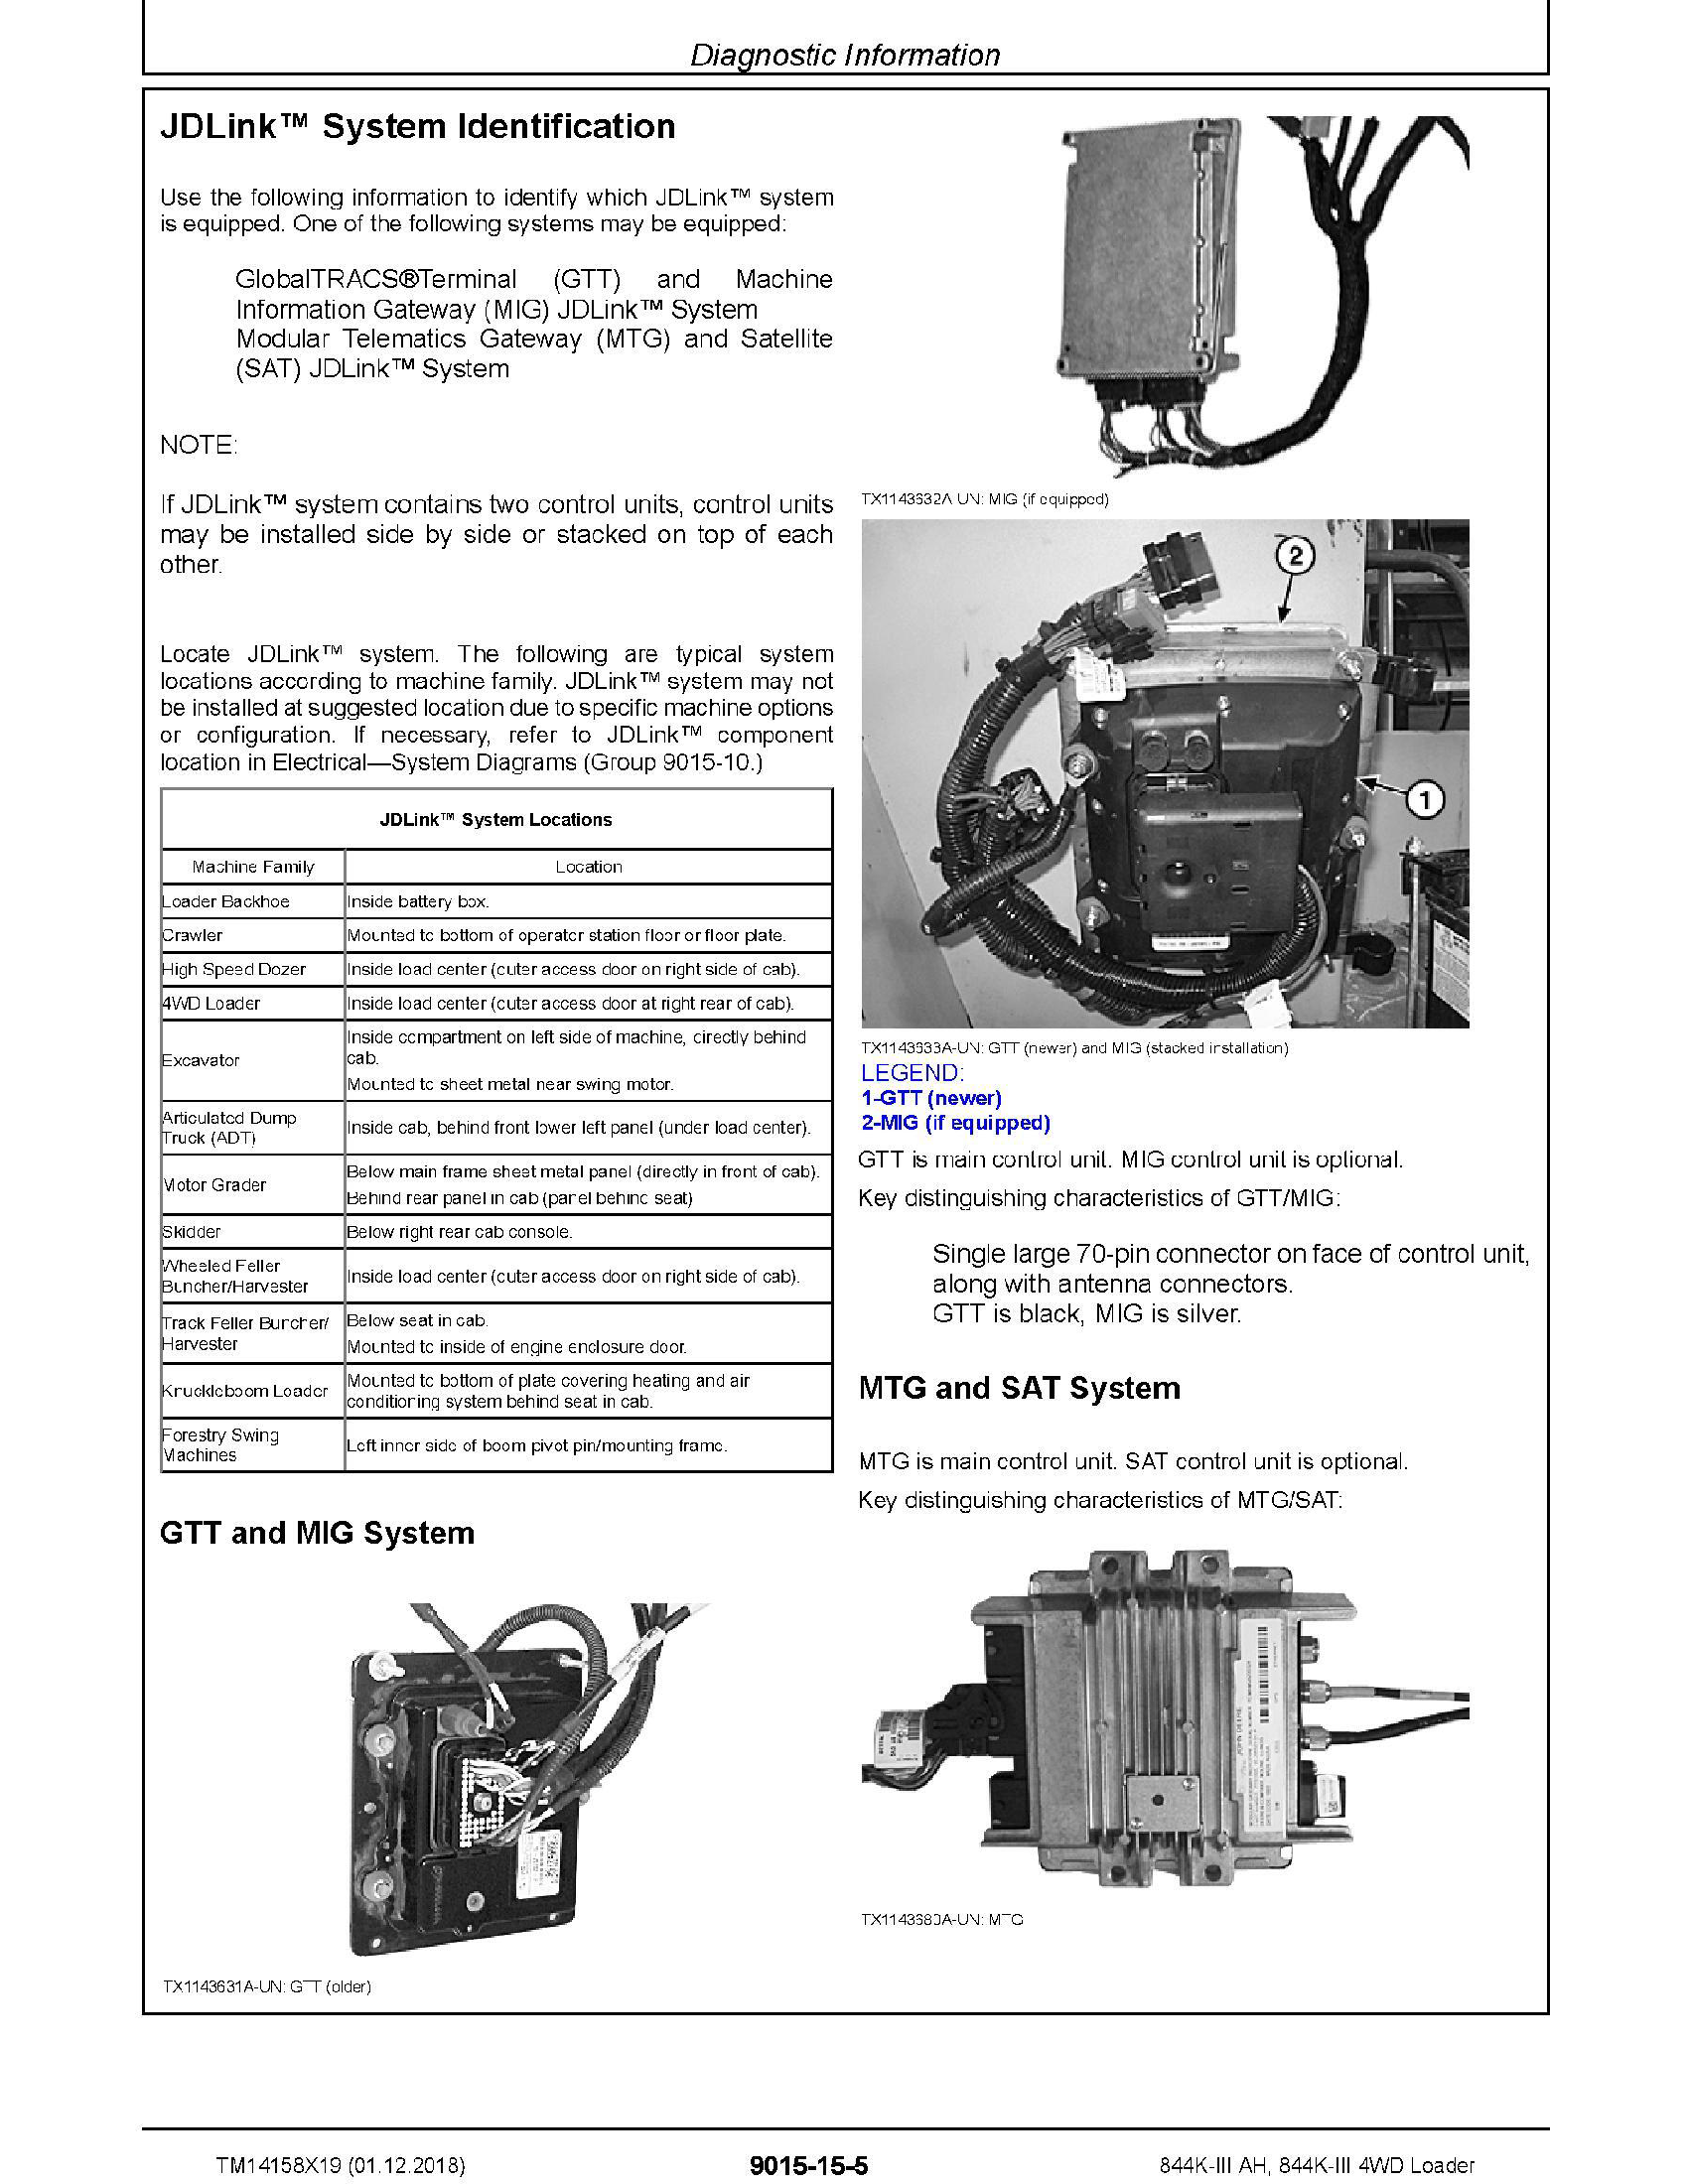 John Deere 650J manual pdf